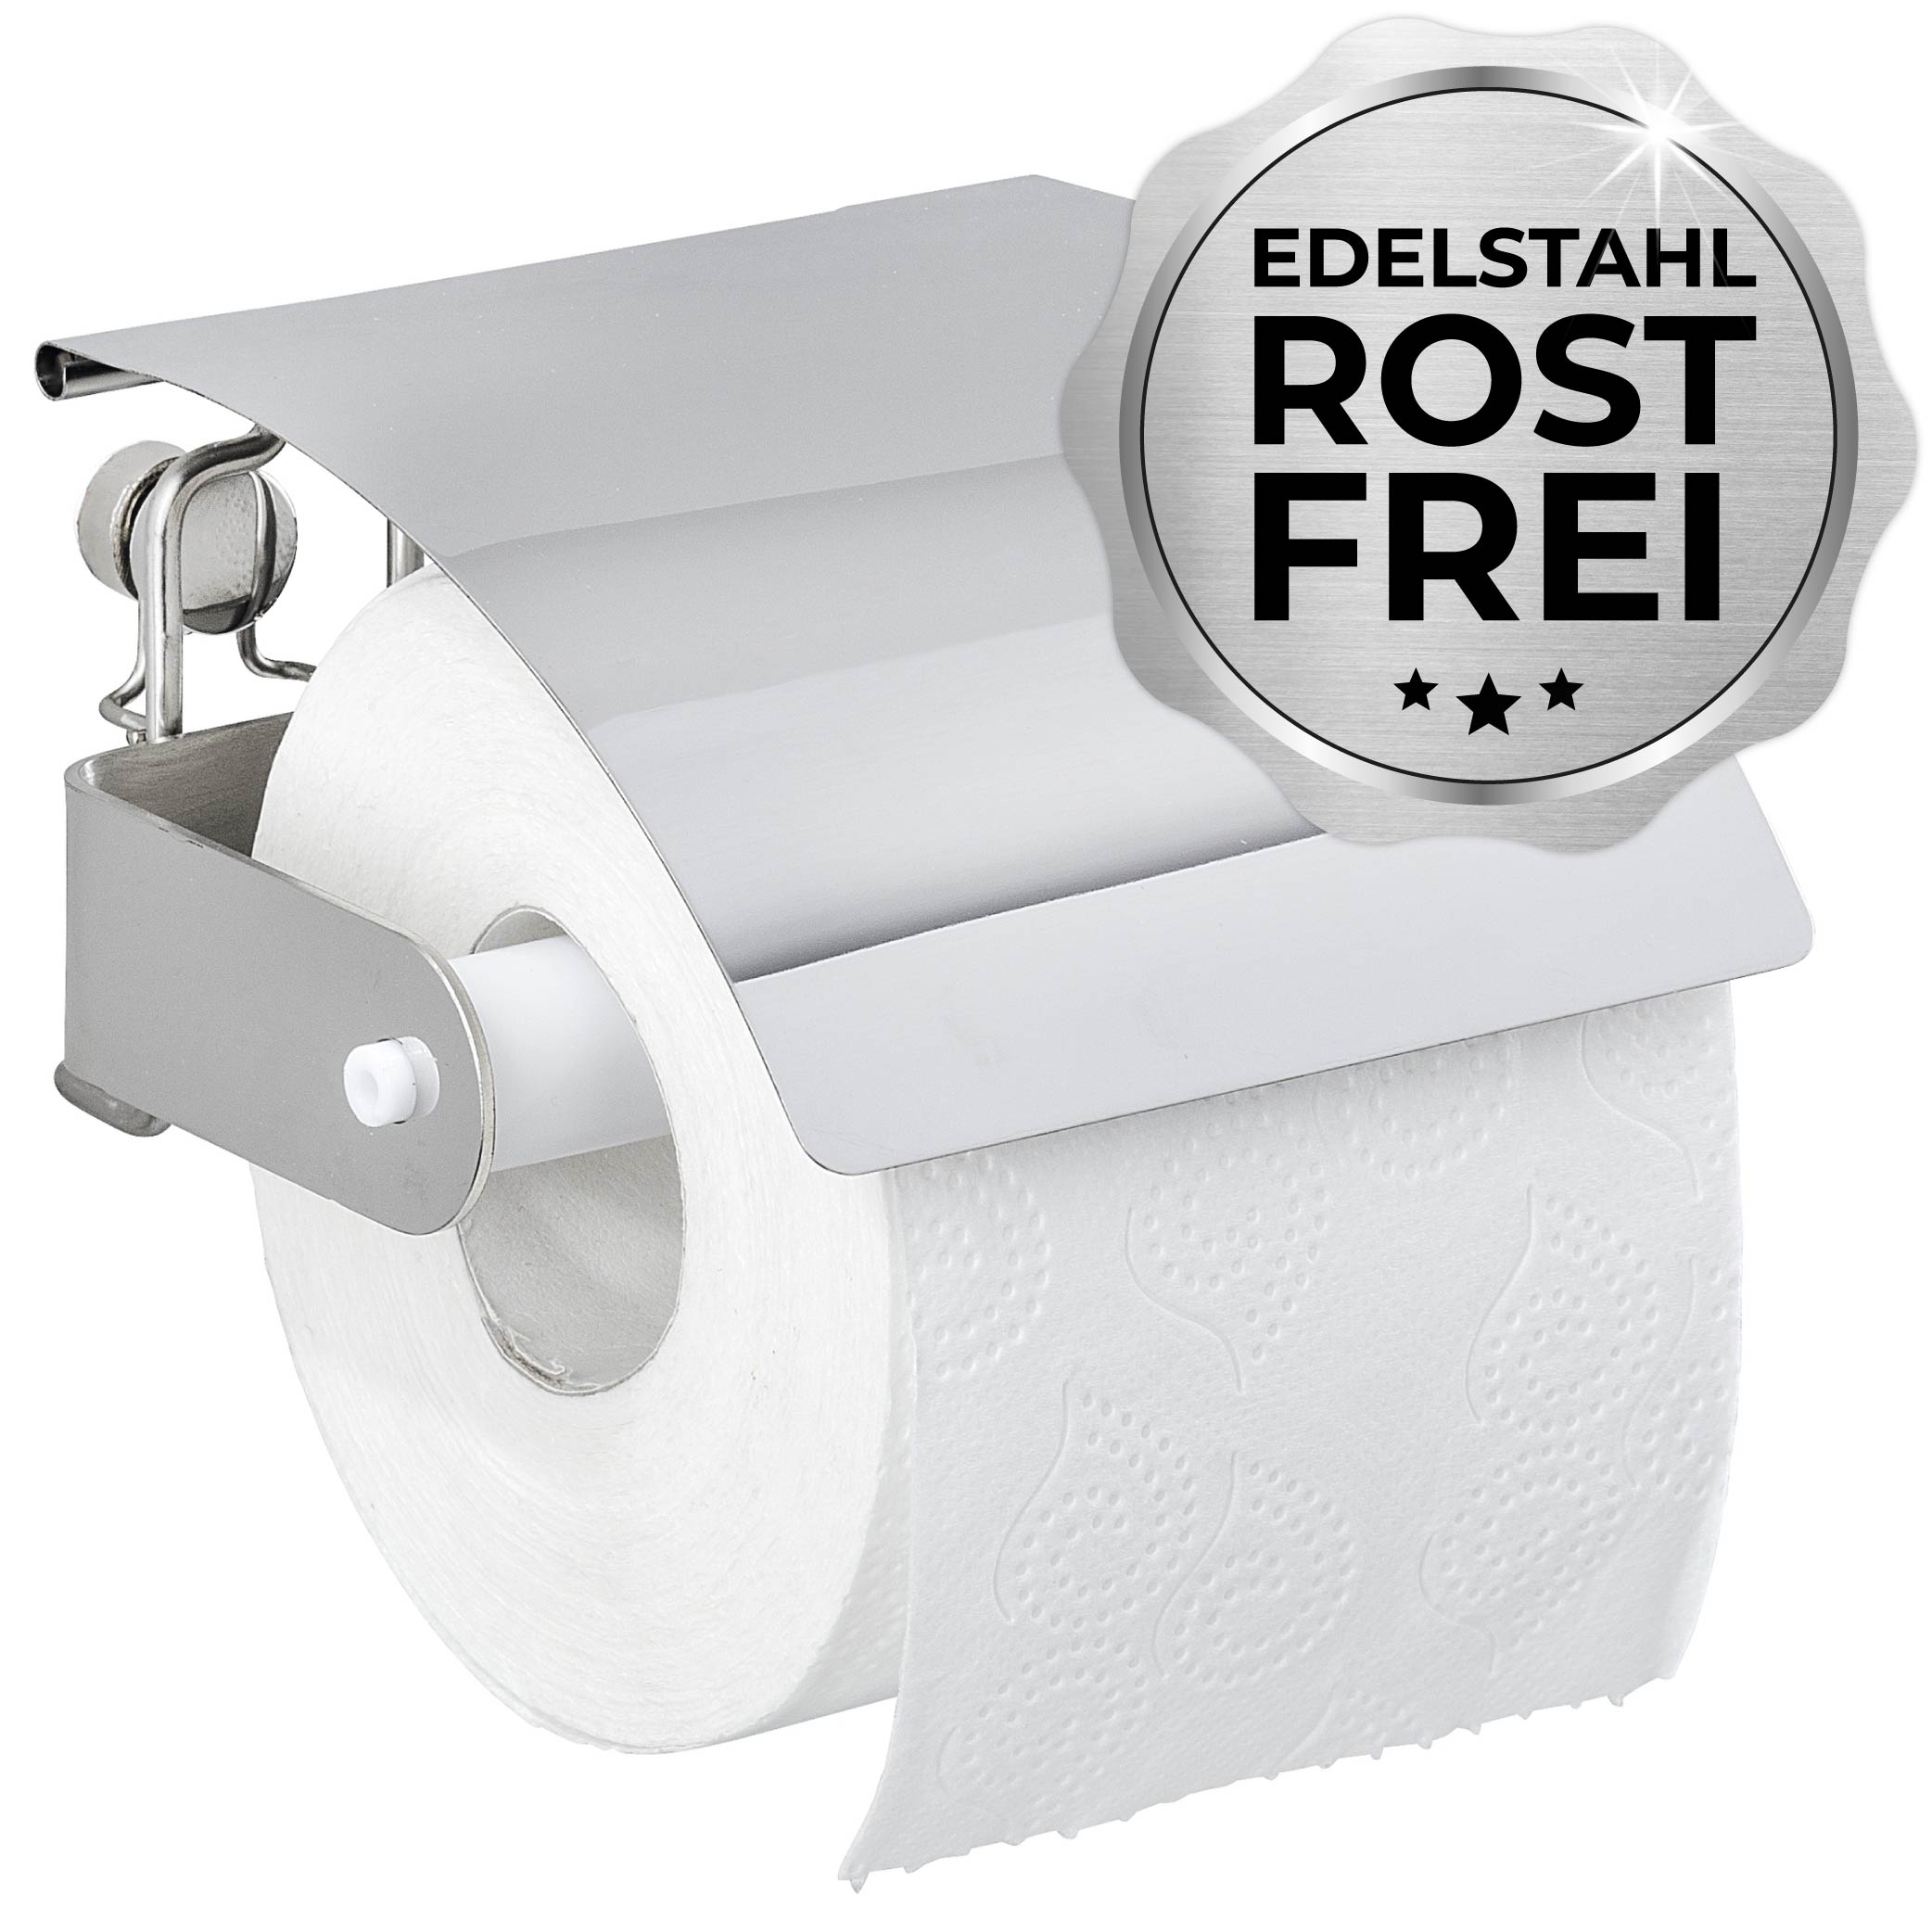 Moderner Toilettenpapierhalter - Die Ergänzung für jedes Bad! | Deal Rocket